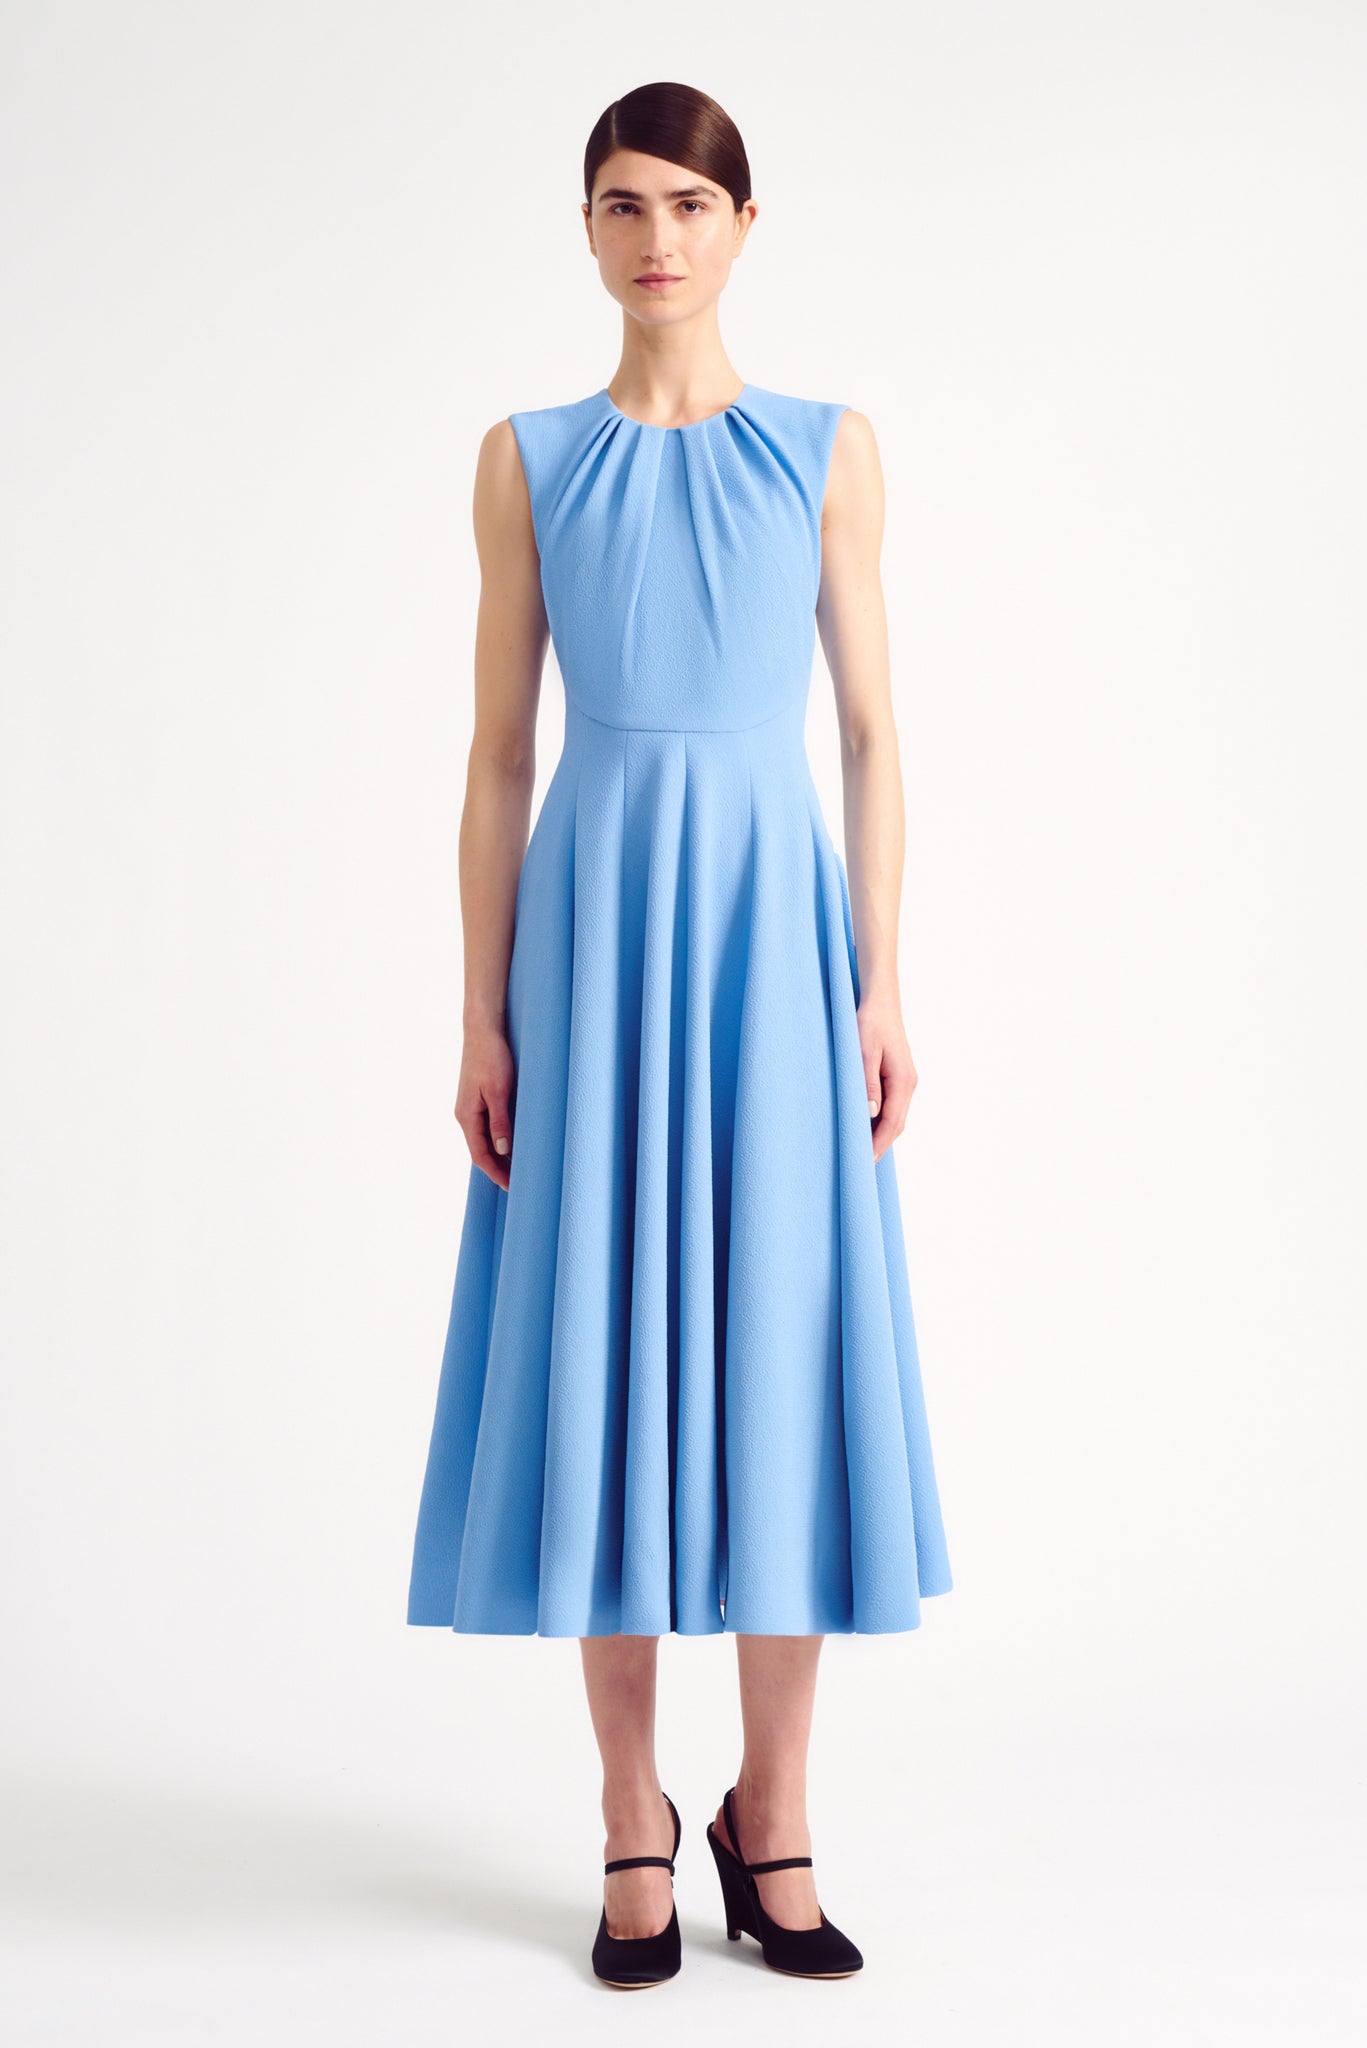 Marlen Dress in Celeste Blue Double Crepe | Emilia Wickstead